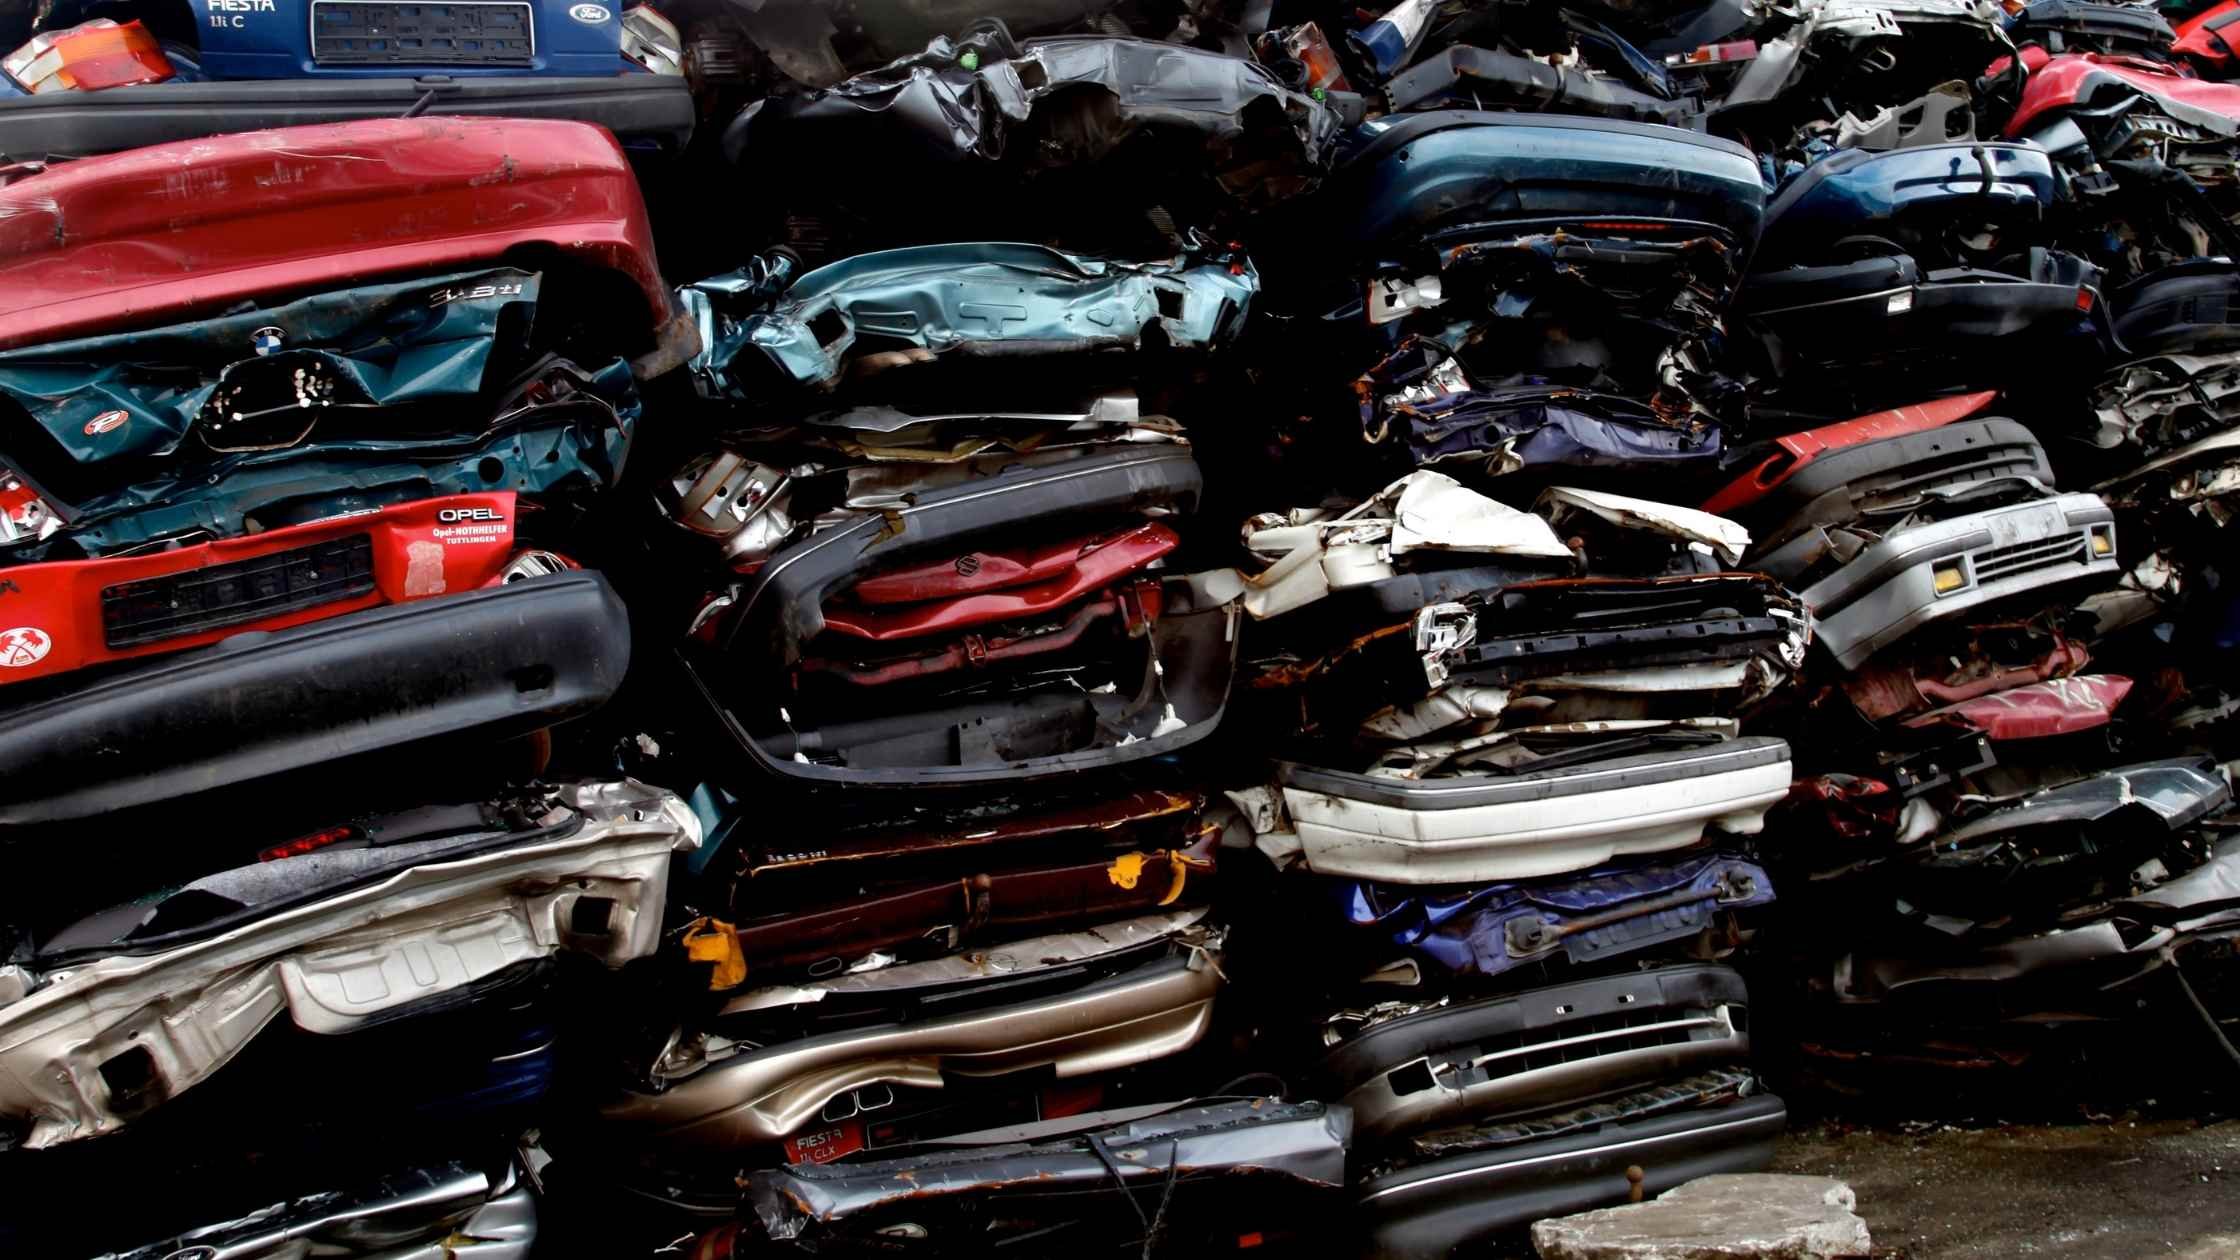 Car scrapyard, pile of crushed vehicles in junk yard